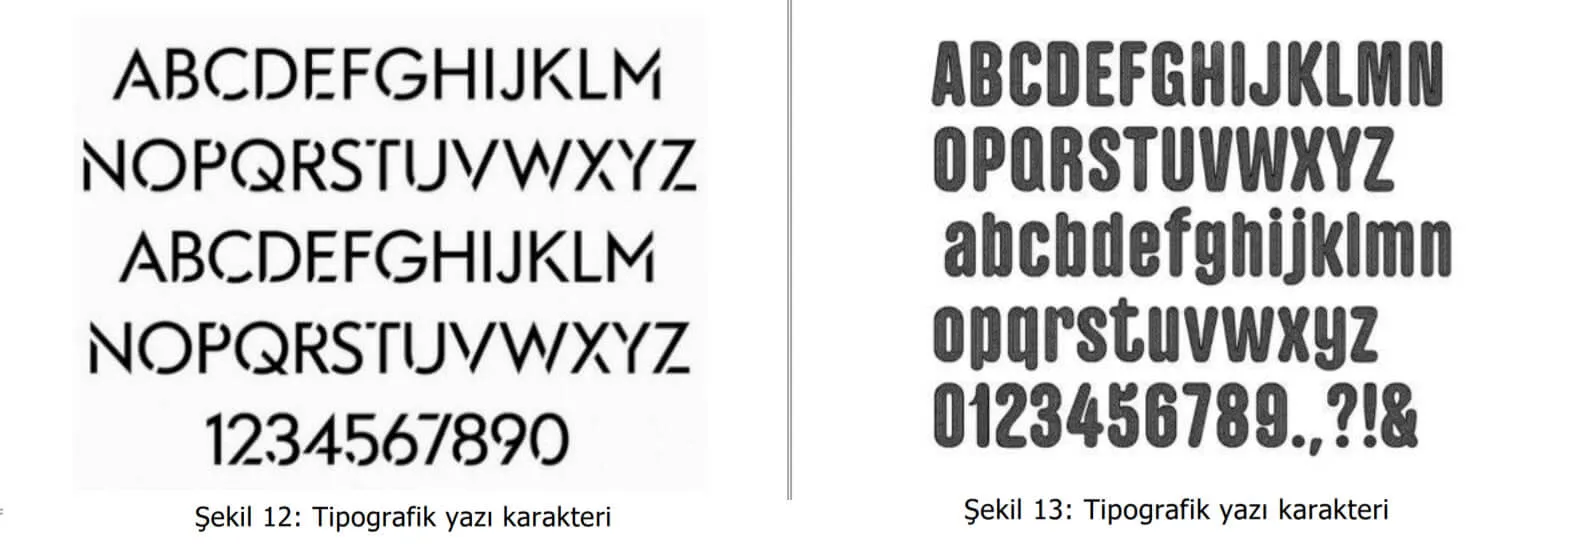 tipografik yazı karakter örnekleri-trabzon web tasarım